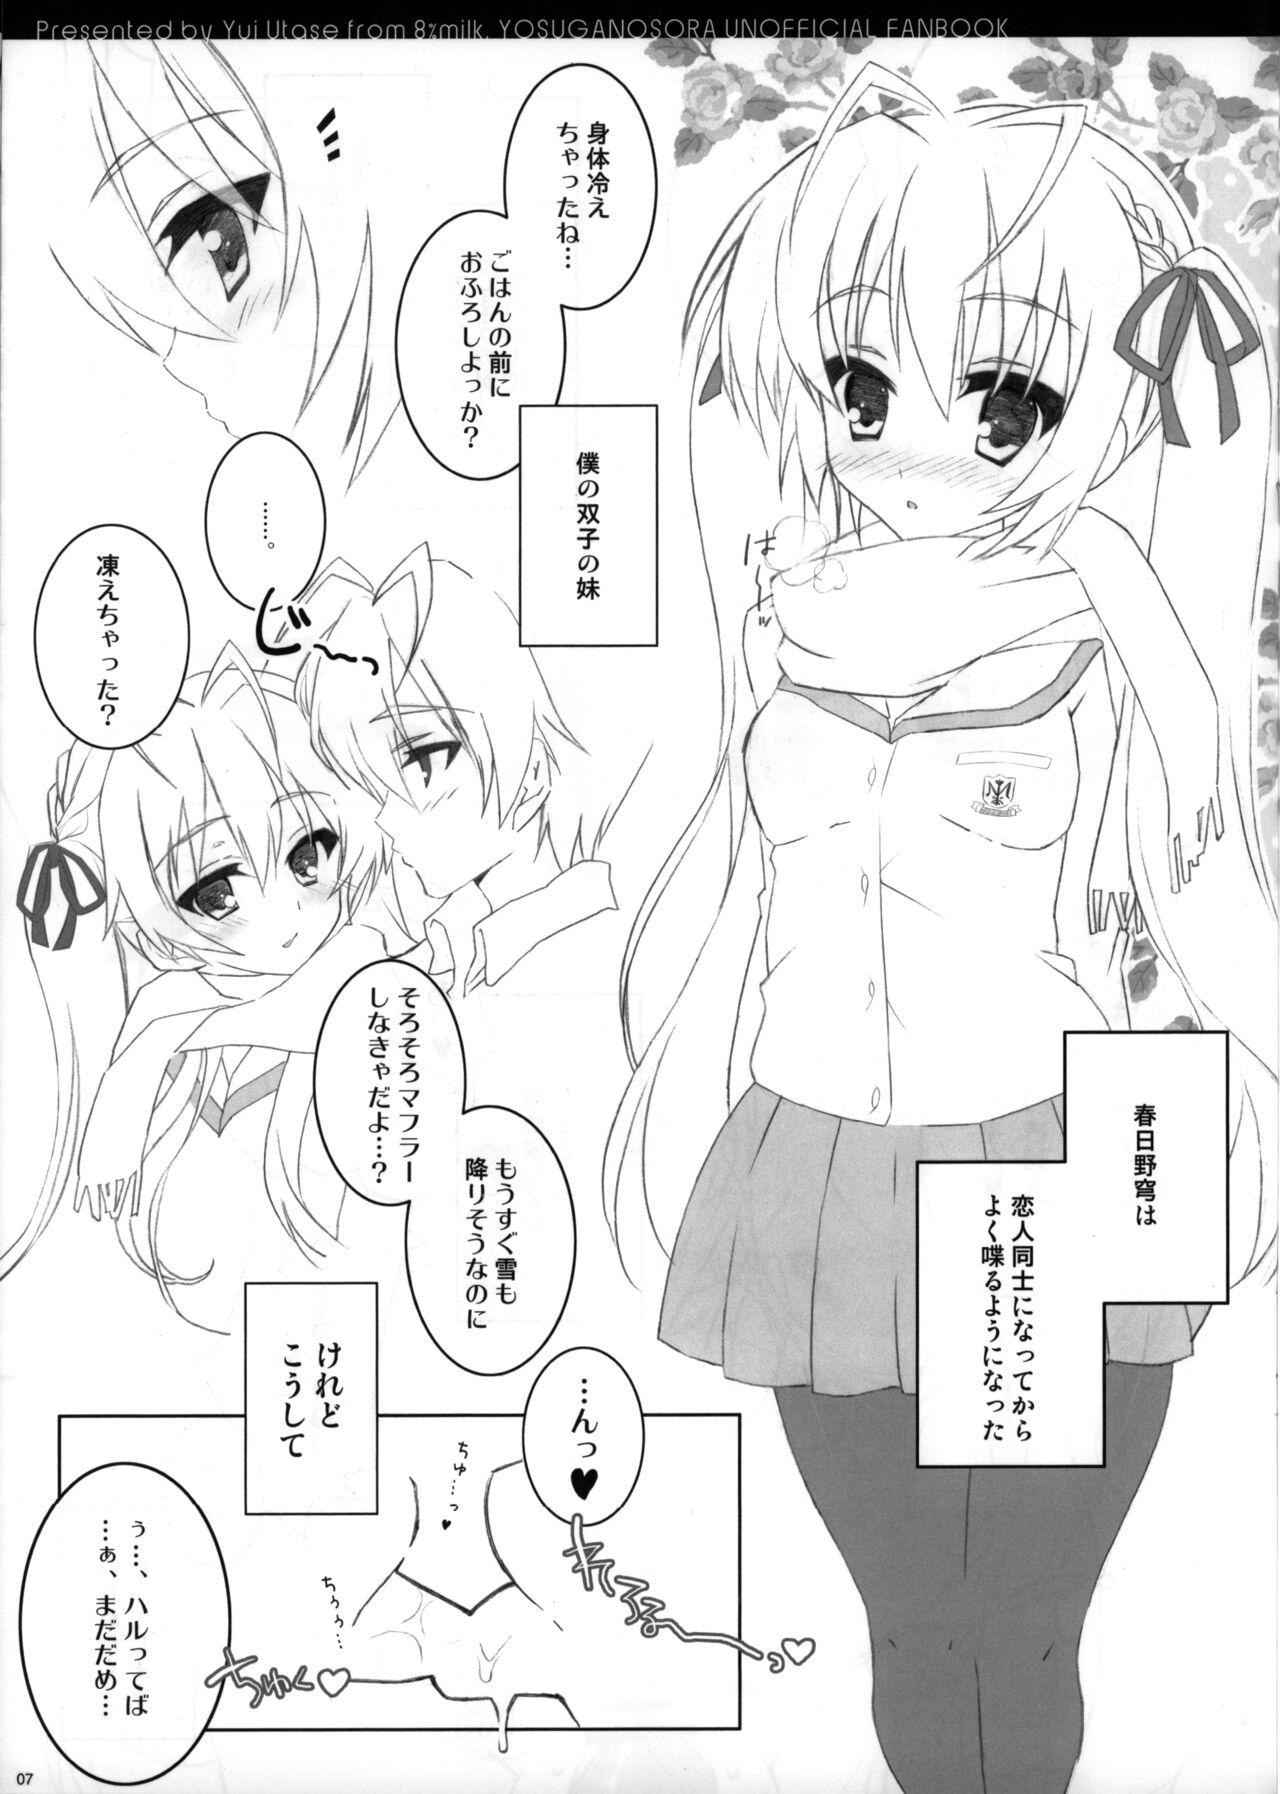 Farting Sora ori snowin'! - Yosuga no sora Butthole - Page 5